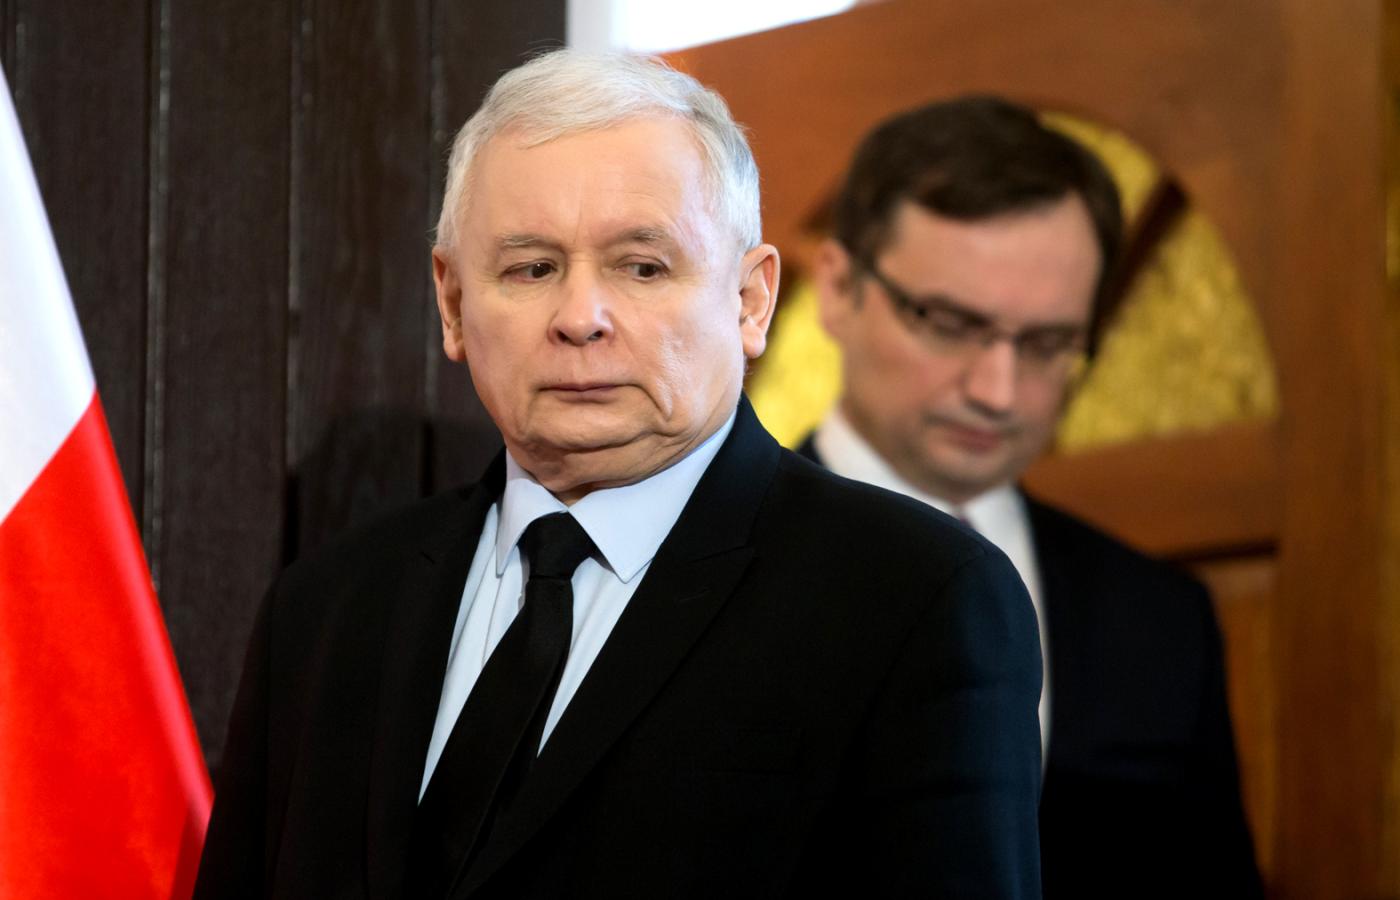 Po co Kaczyński spotkał się z Ziobrą?